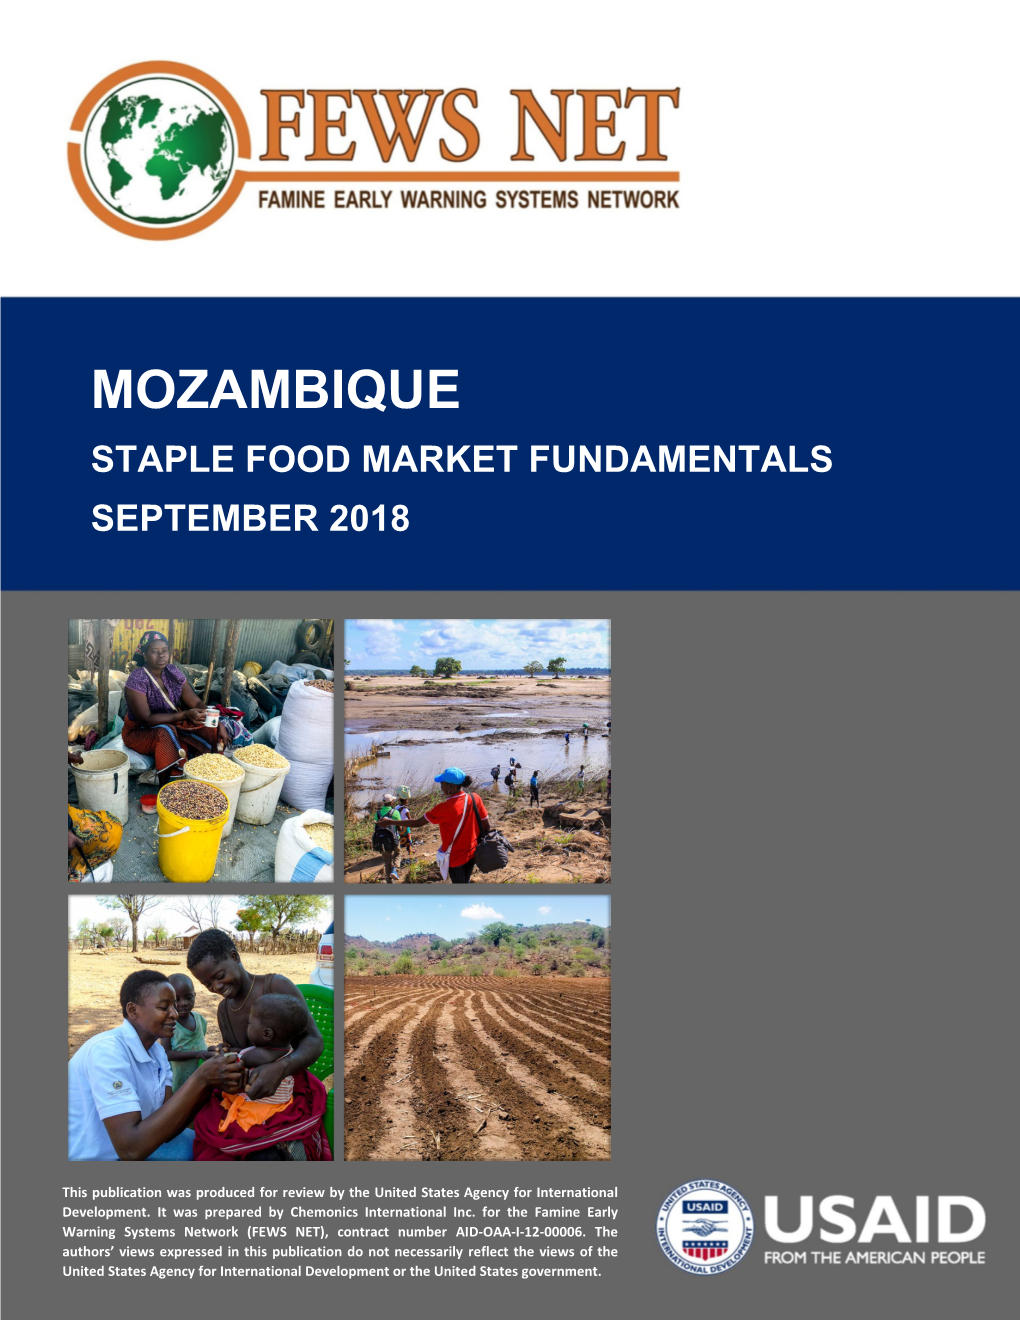 FEWS NET Mozambique Staple Food Market Fundamentals Report